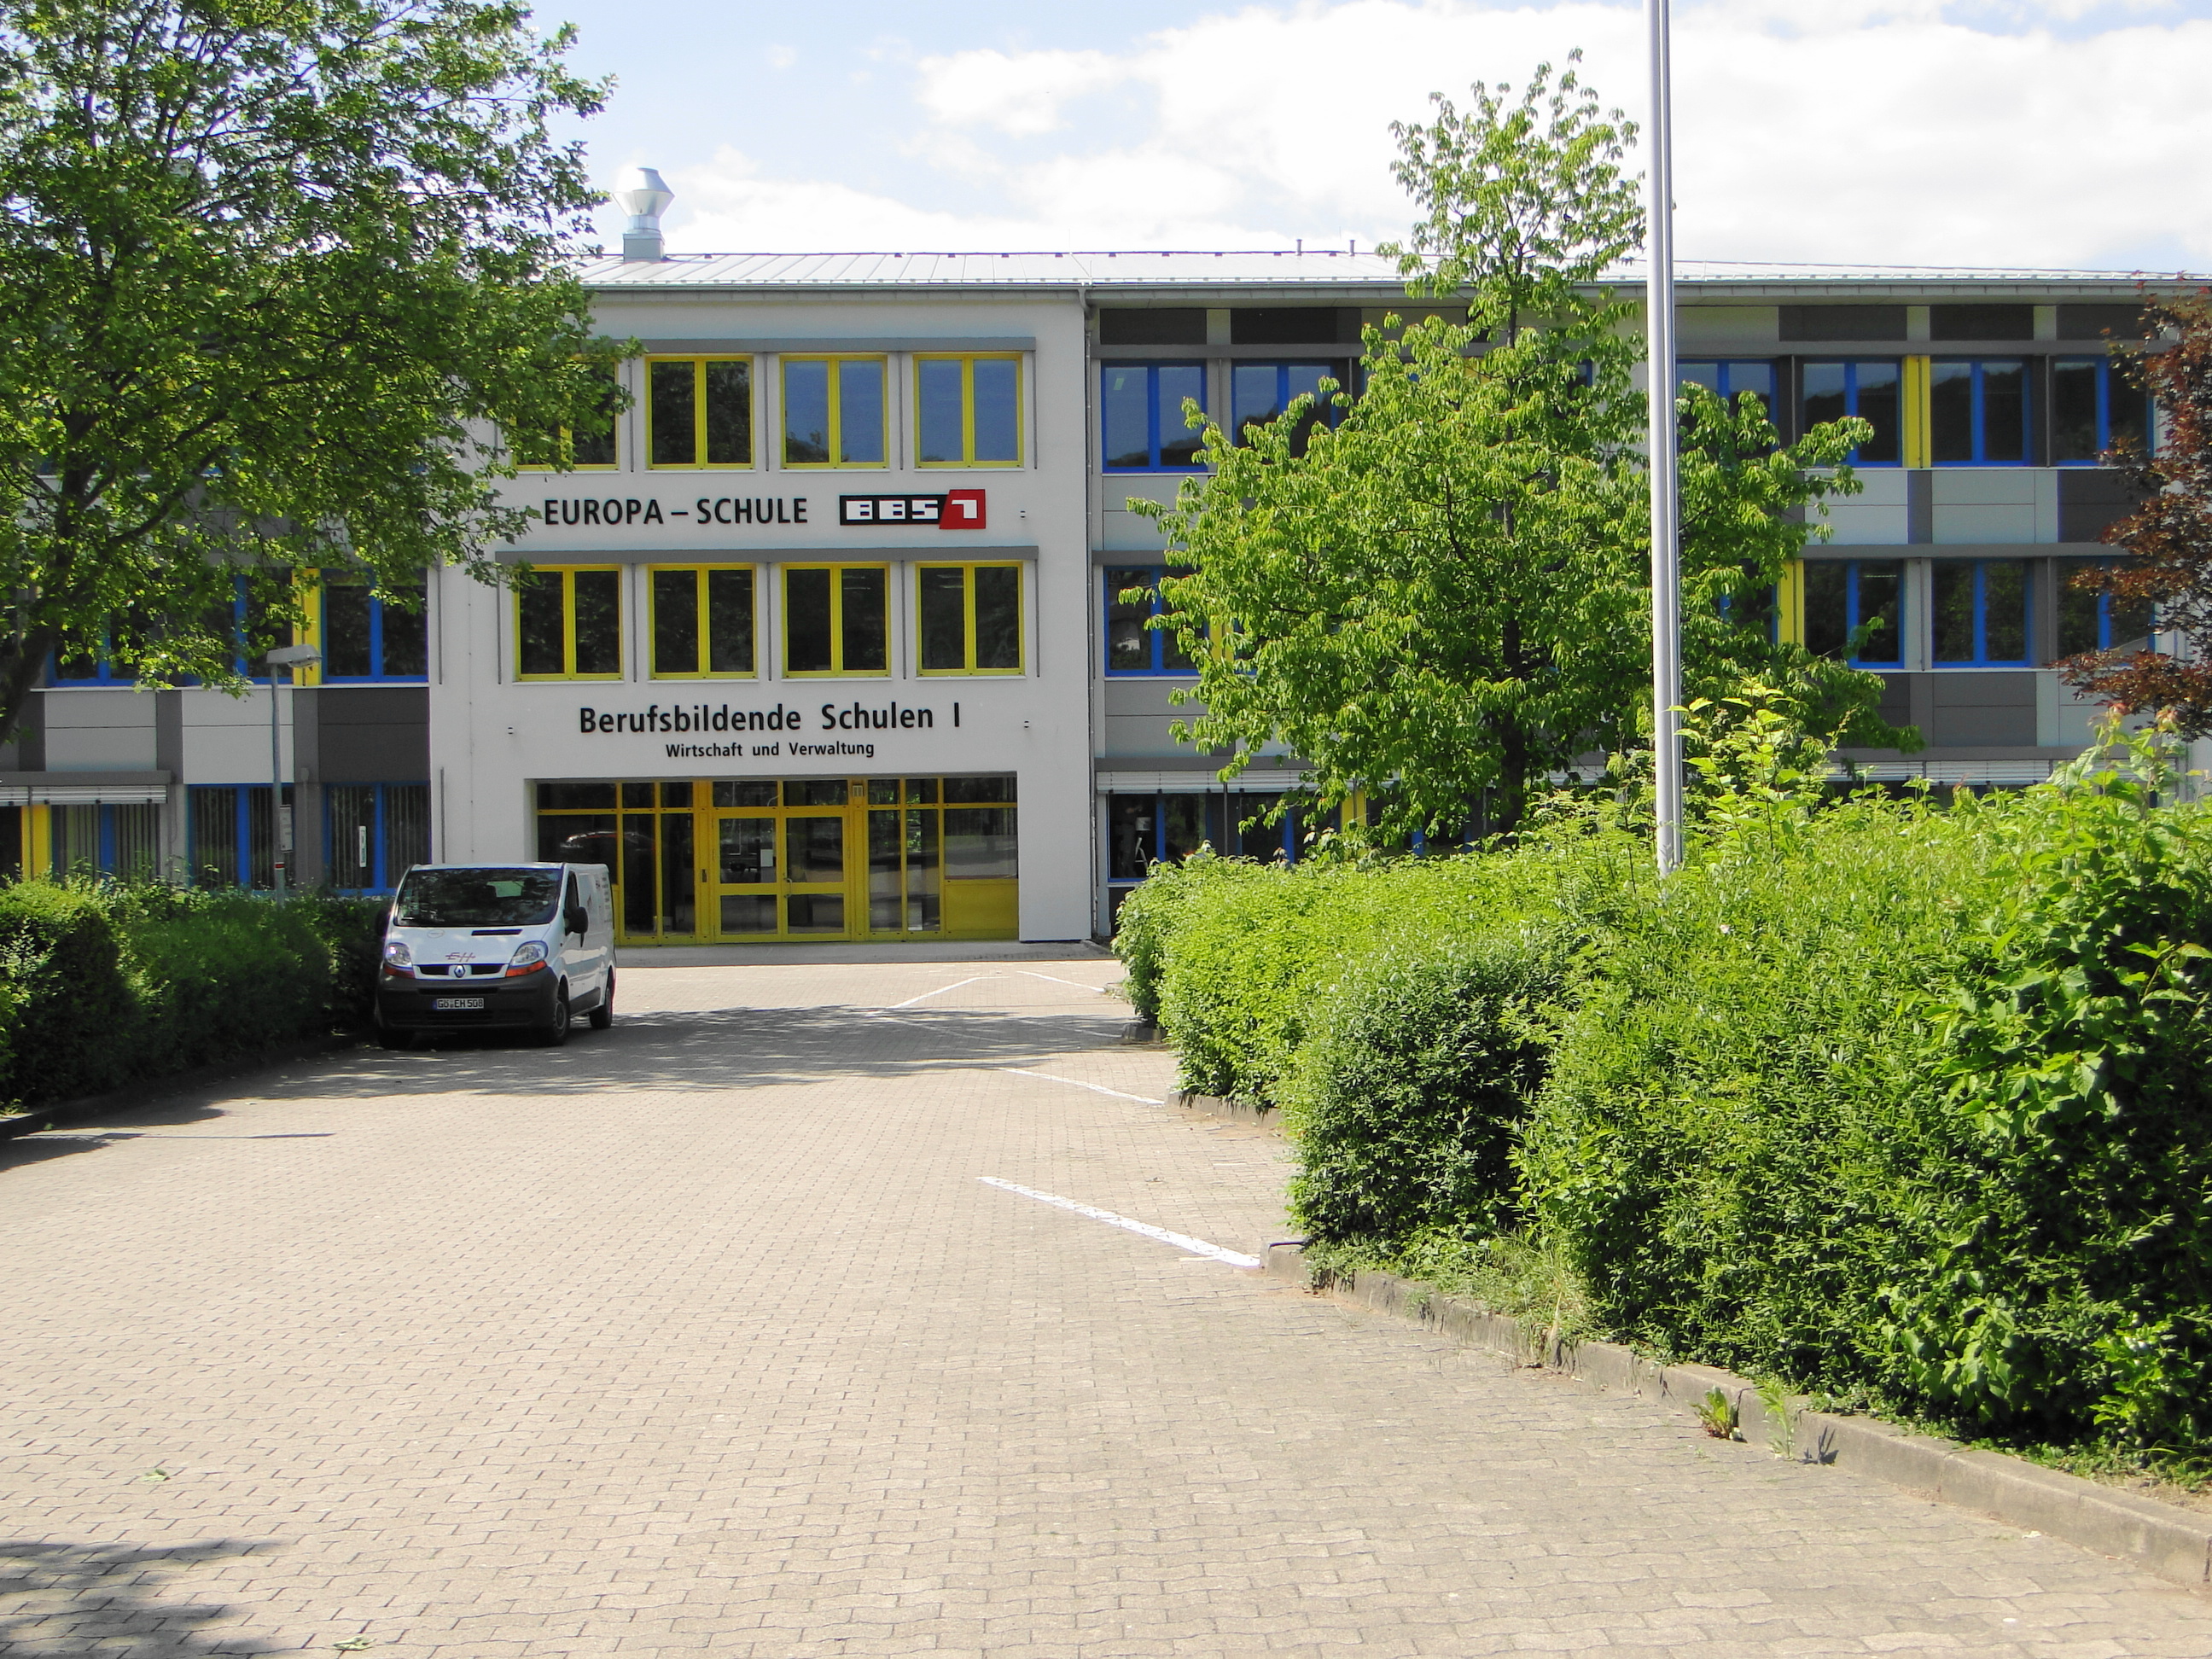 Europa-Schule BBS I Berufsbildende Schulen 1 Northeim  für Wirtschaft und Verwaltung in der Sudheimer Str. 36, Eingangsbereich